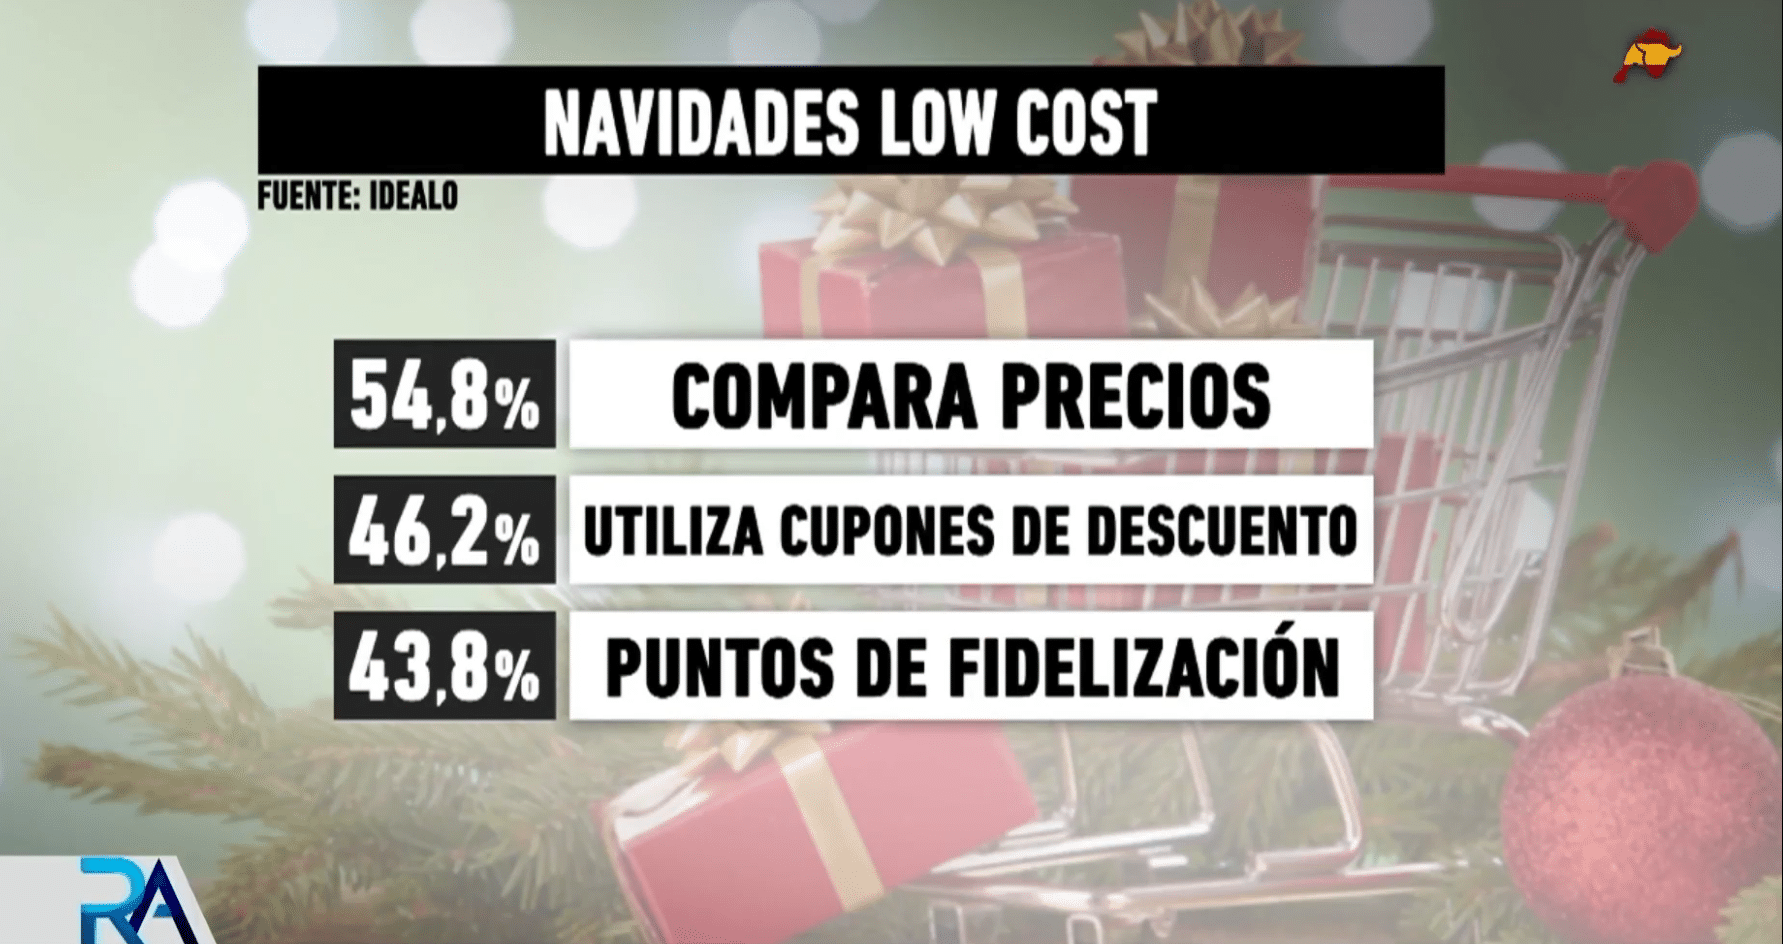 Llegan las ‘Navidades low cost’: la inflación hace que los españoles busquen las ofertas y las marcas blancas.